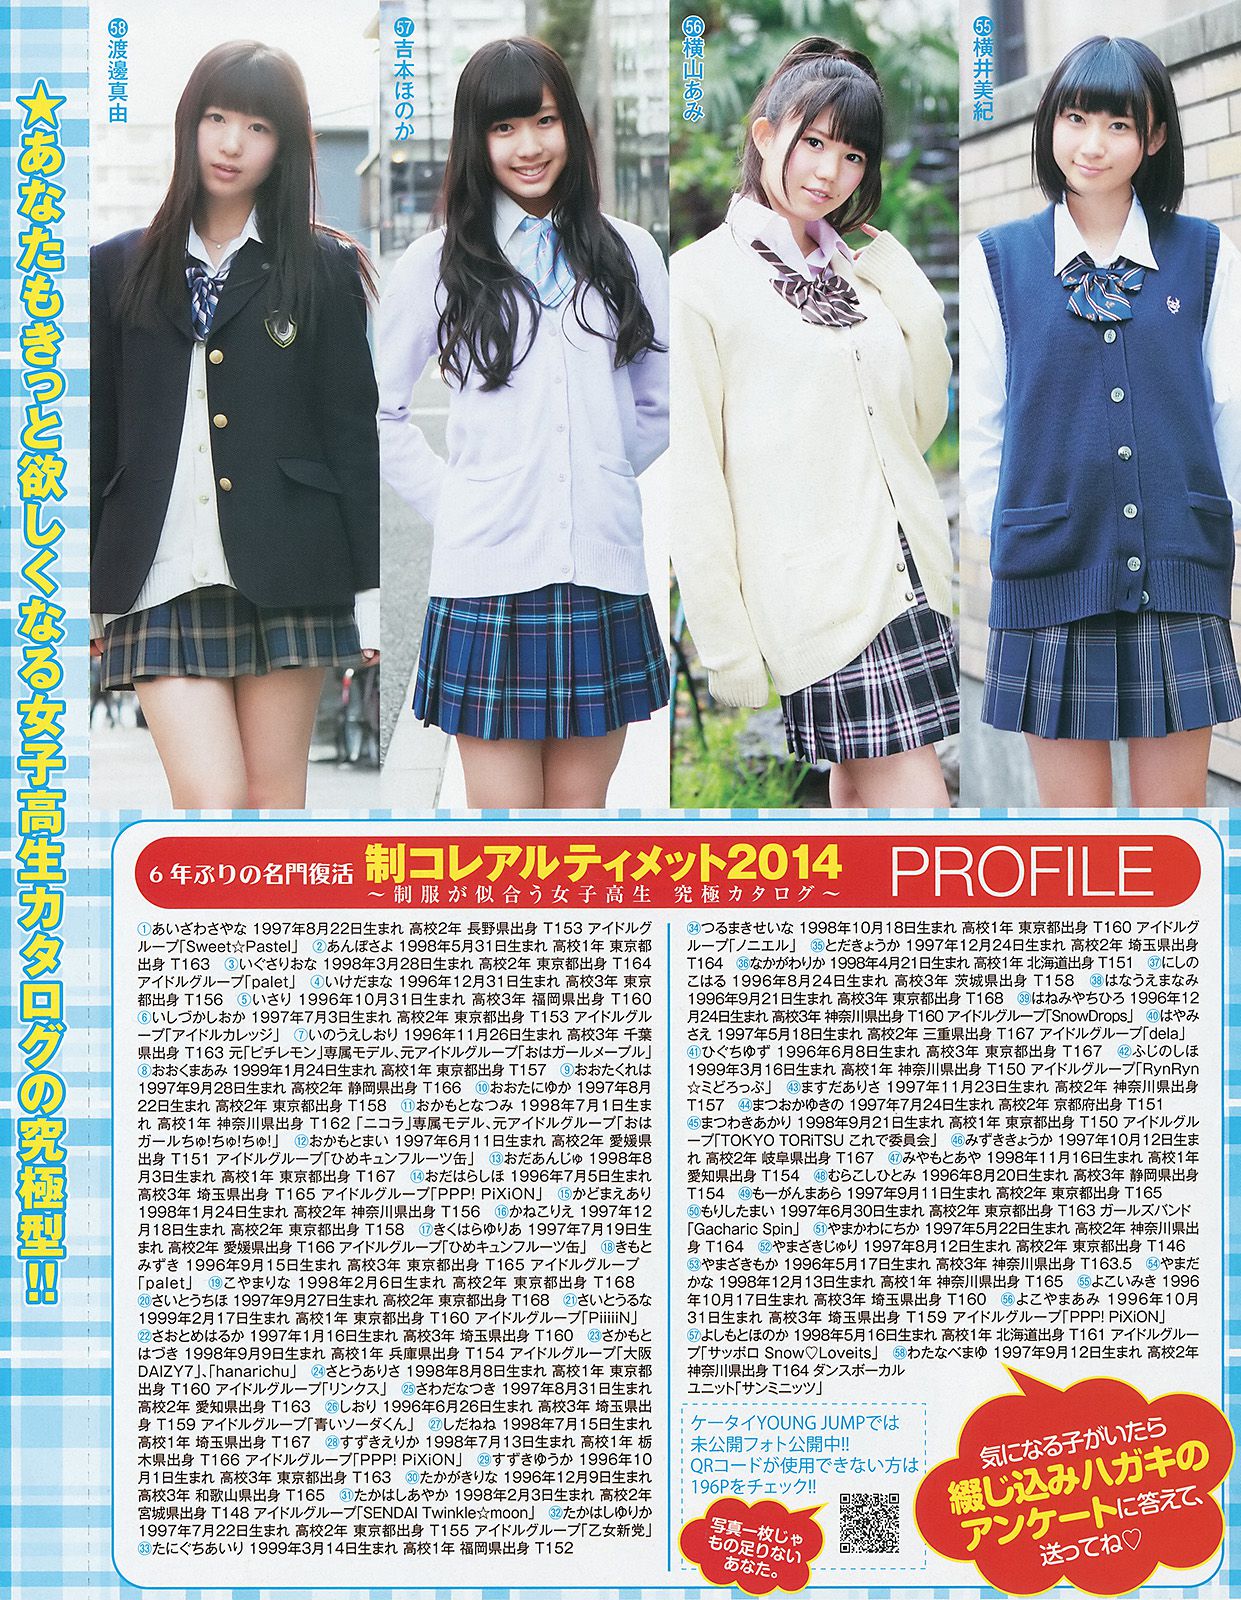 Yua Shinkawa Mizuki Kimoto Collection Ultimate 2014 [Weekly Young Jump] 2014 No.21-22 Photo Magazine หน้า 8 No.5a3d44